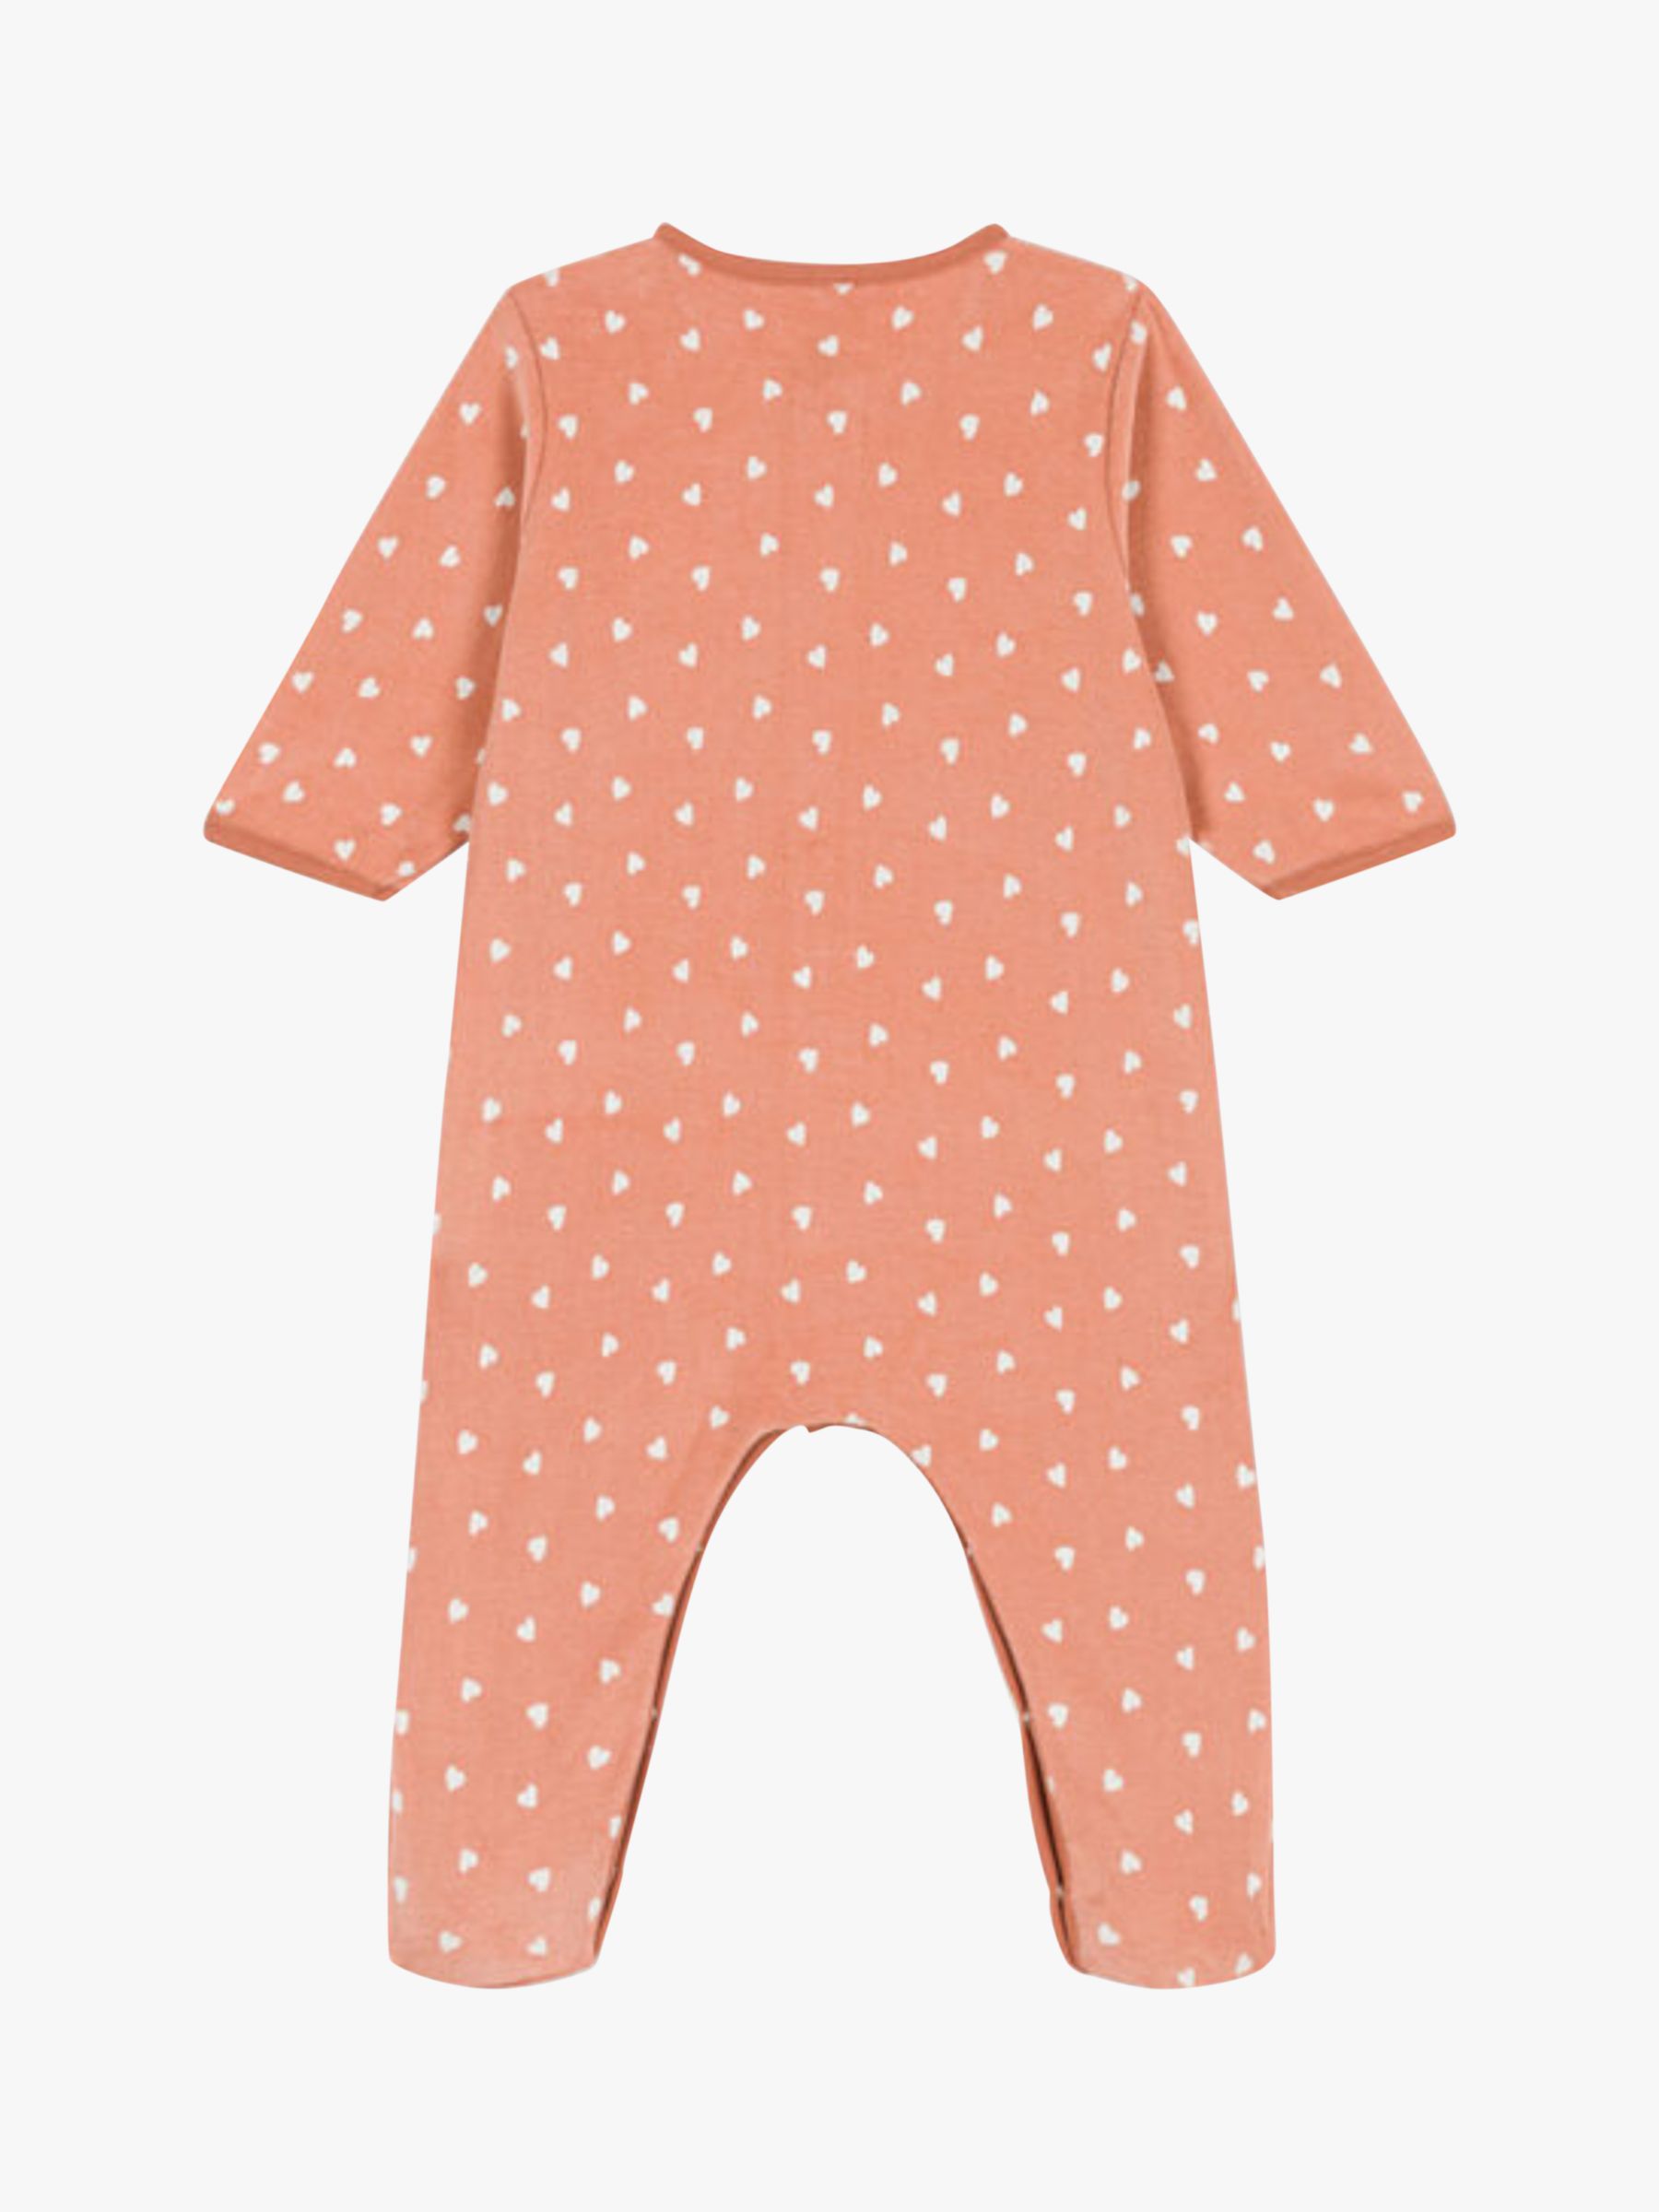 Petit Bateau Baby Patterned Velour Pyjamas, Orange/White, 12 months